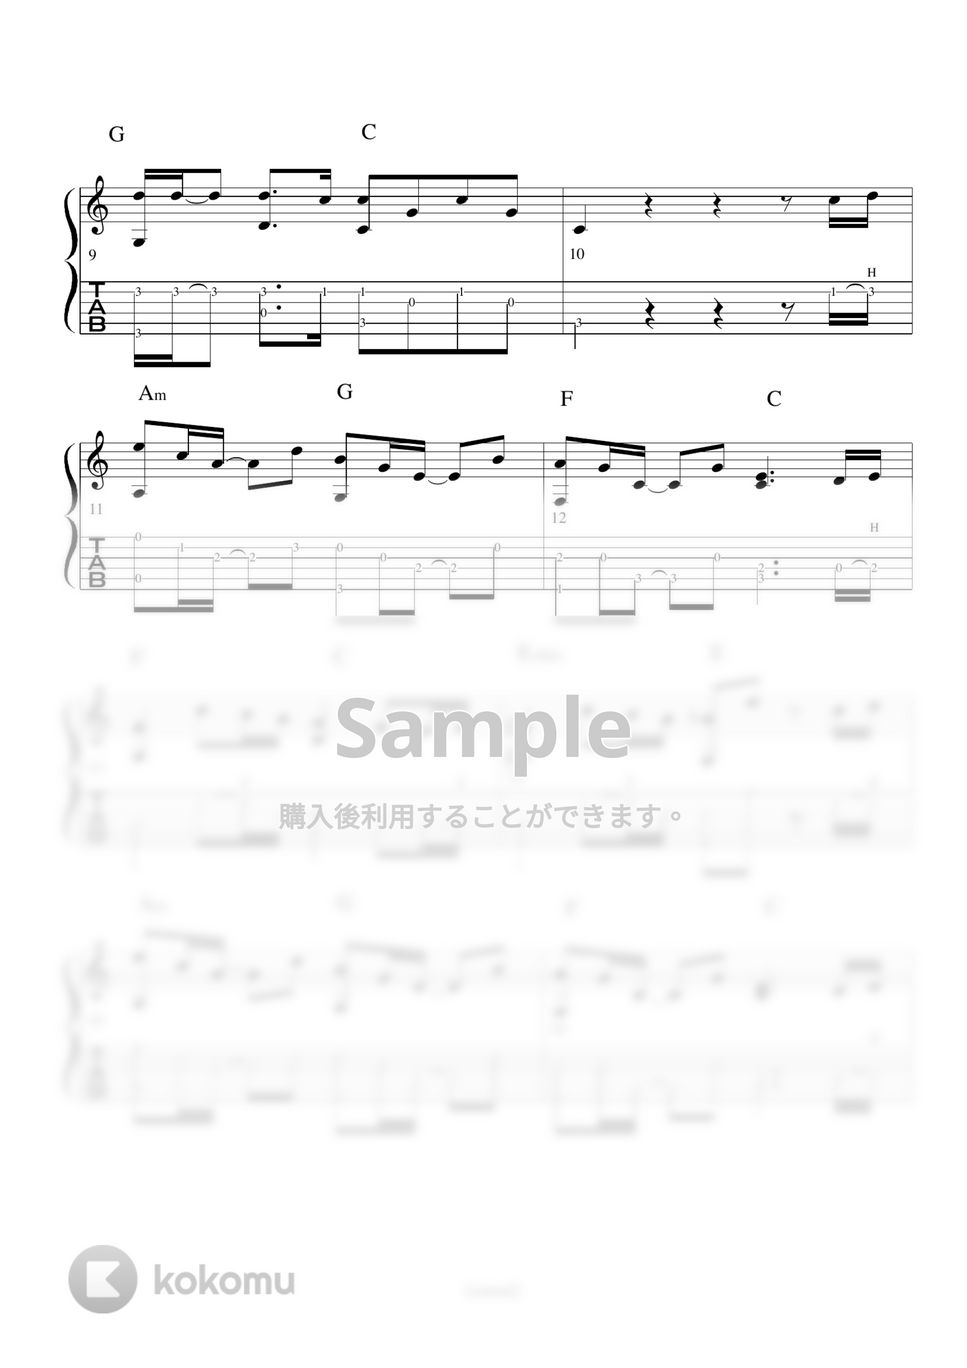 米津弦師 - Lemon (アコギソロギター演奏動画付TAB譜) by バイトーン音楽教室